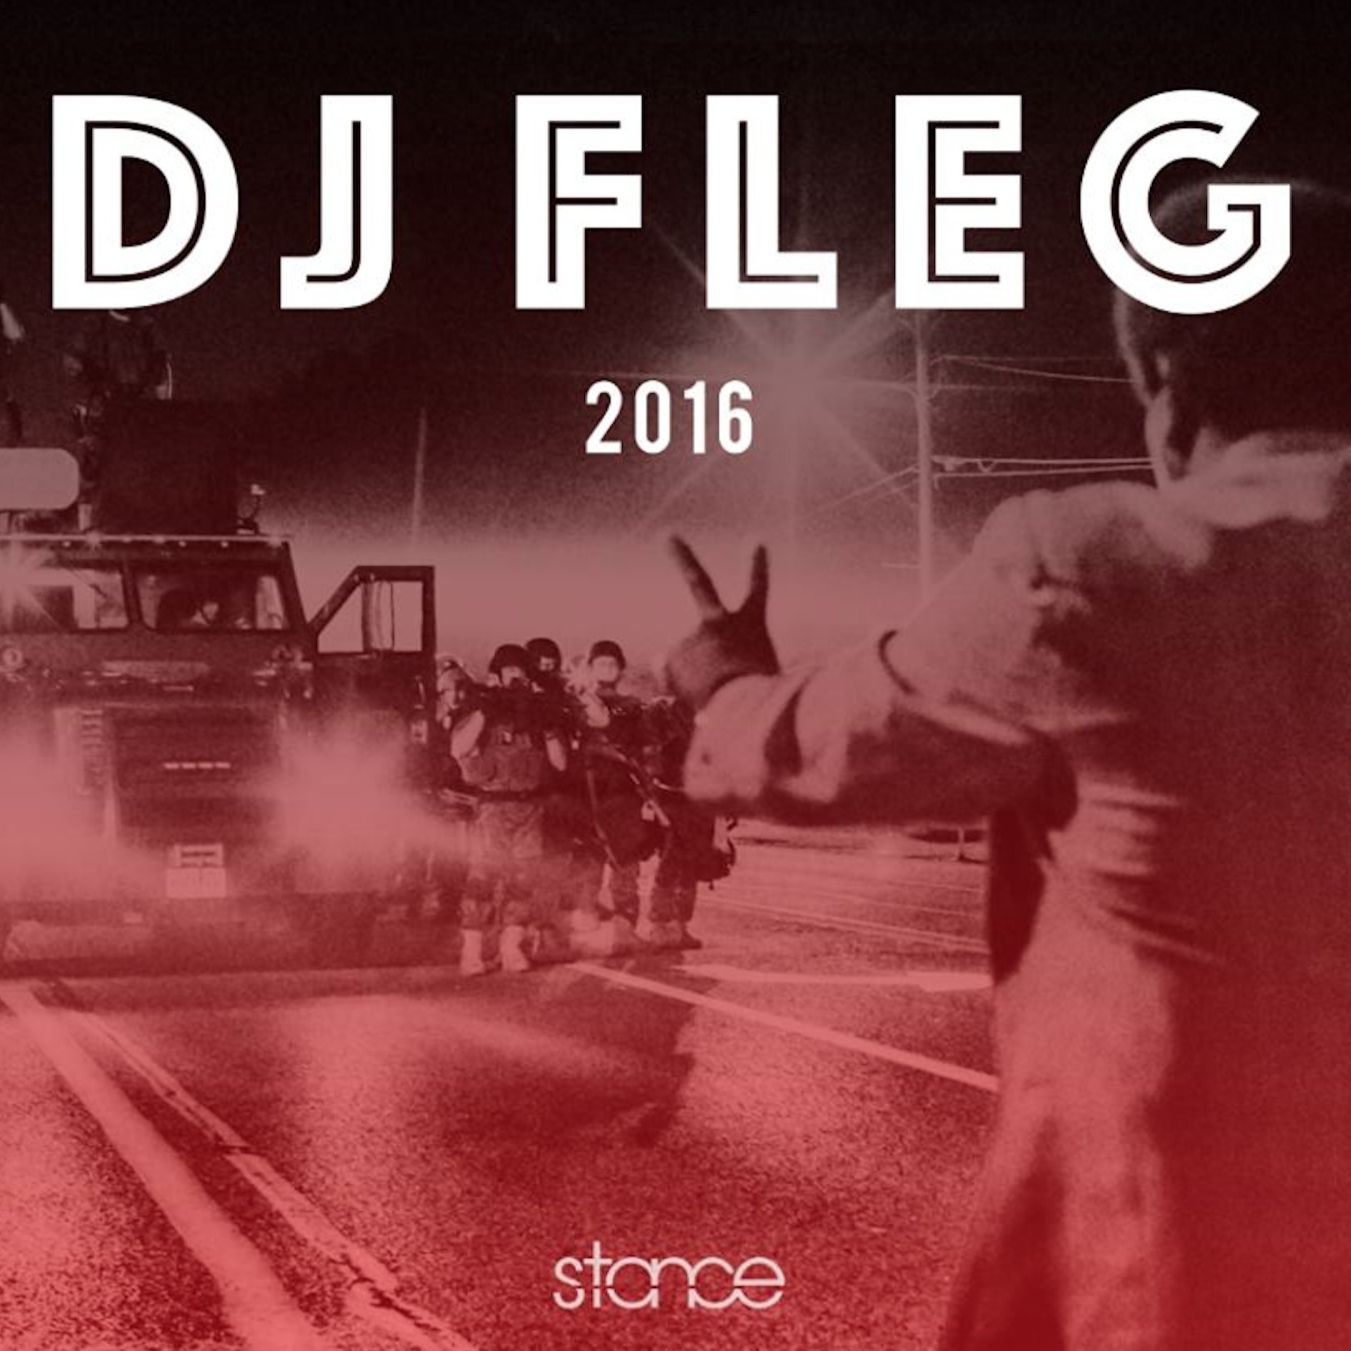 הורד DJ FLEG - STANCE BBOY/BGIRL MIX aka BBOYISM